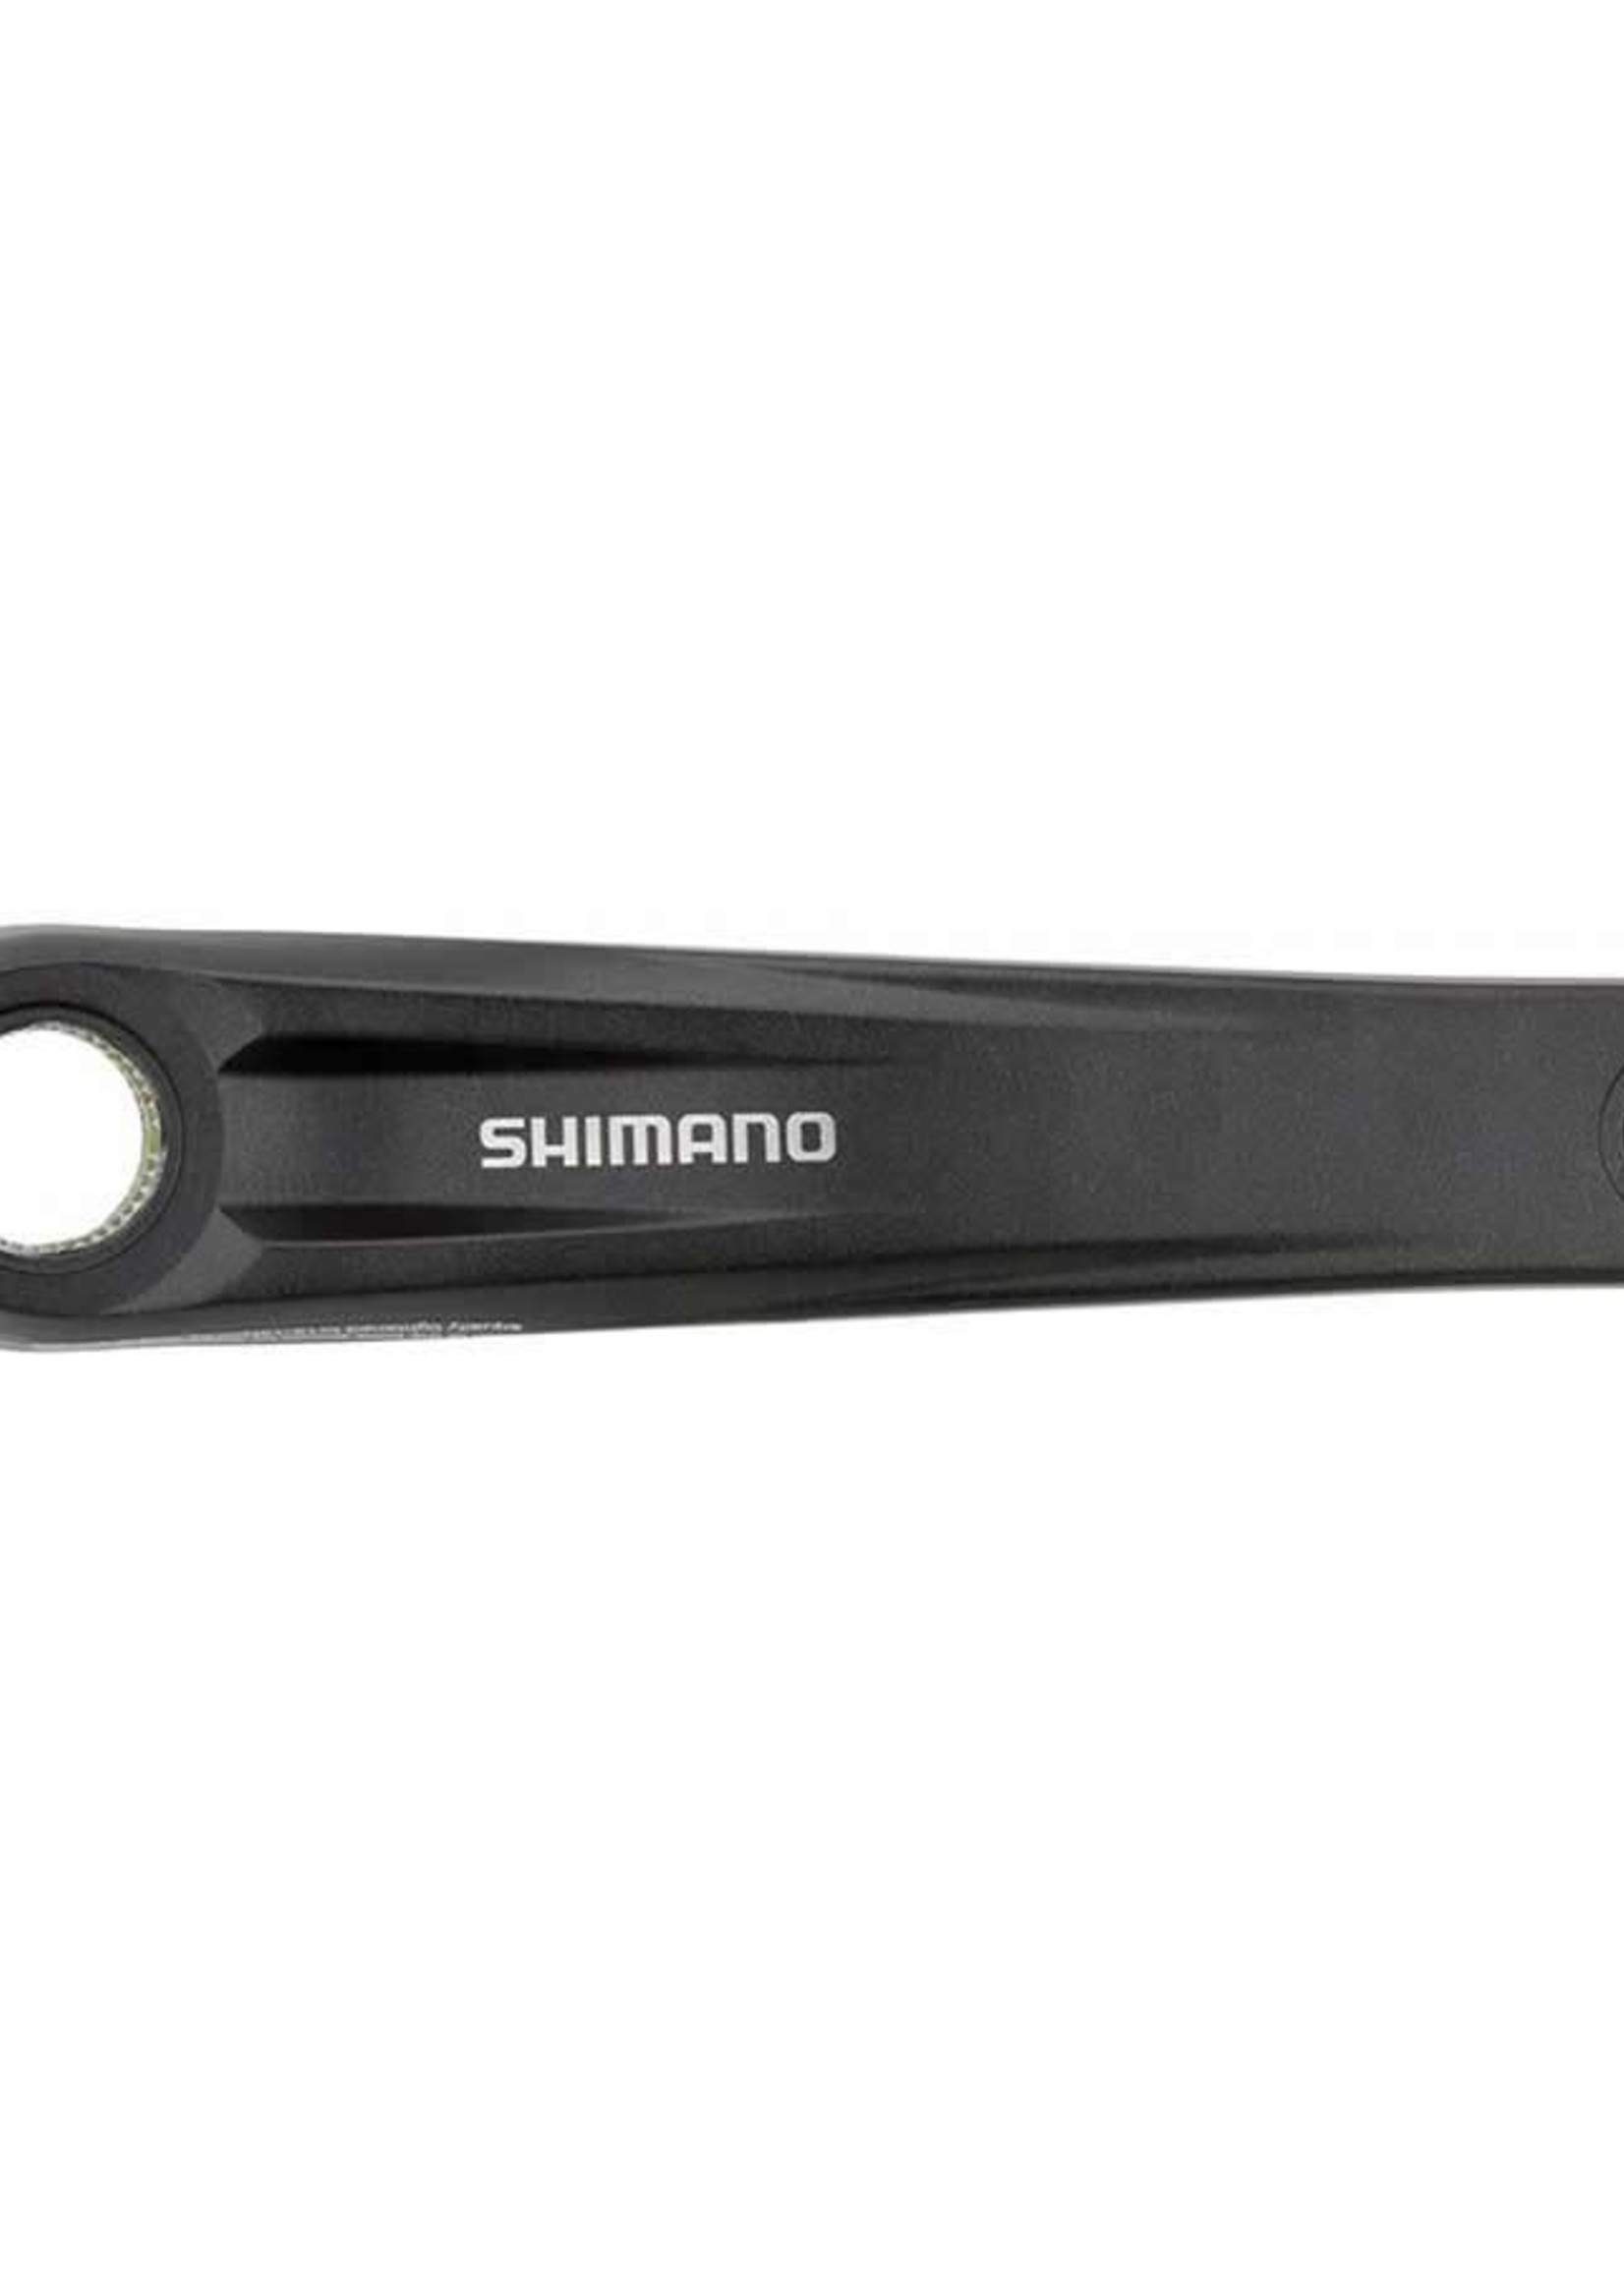 Shimano Shimano, FC-MT500 Crank Arm, Crank Arm, 170mm, Hollowtech II, Black, Y1VB98030